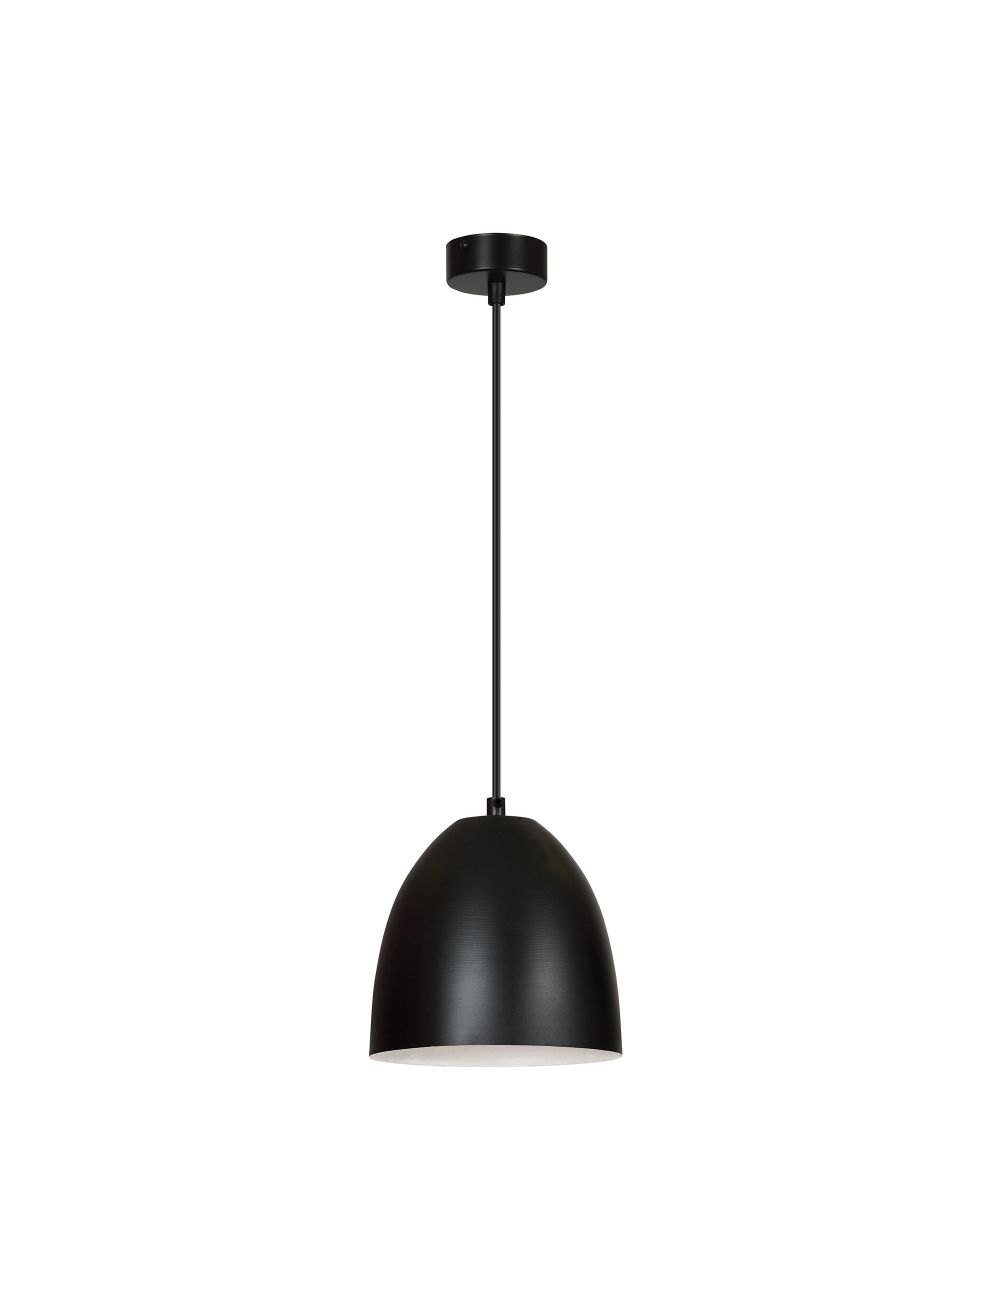 LENOX 1 BLACK-GOLD 410/1 nowoczesna lampa wisząca Czarno / Złota EMIBIG